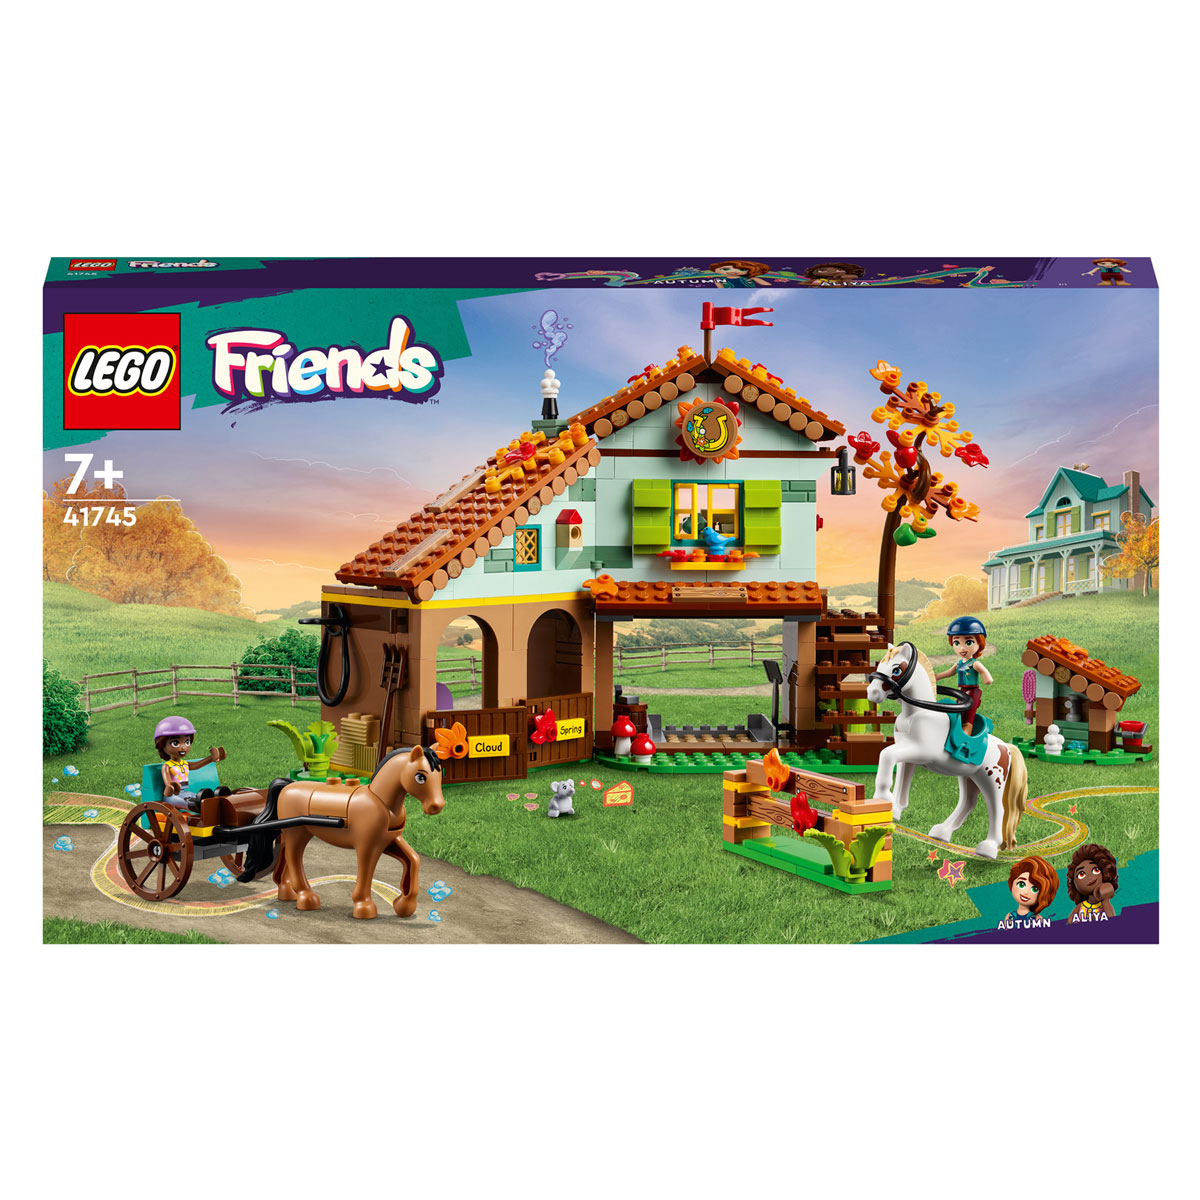 LEGO Friends 41745 Autumns Pferdestall